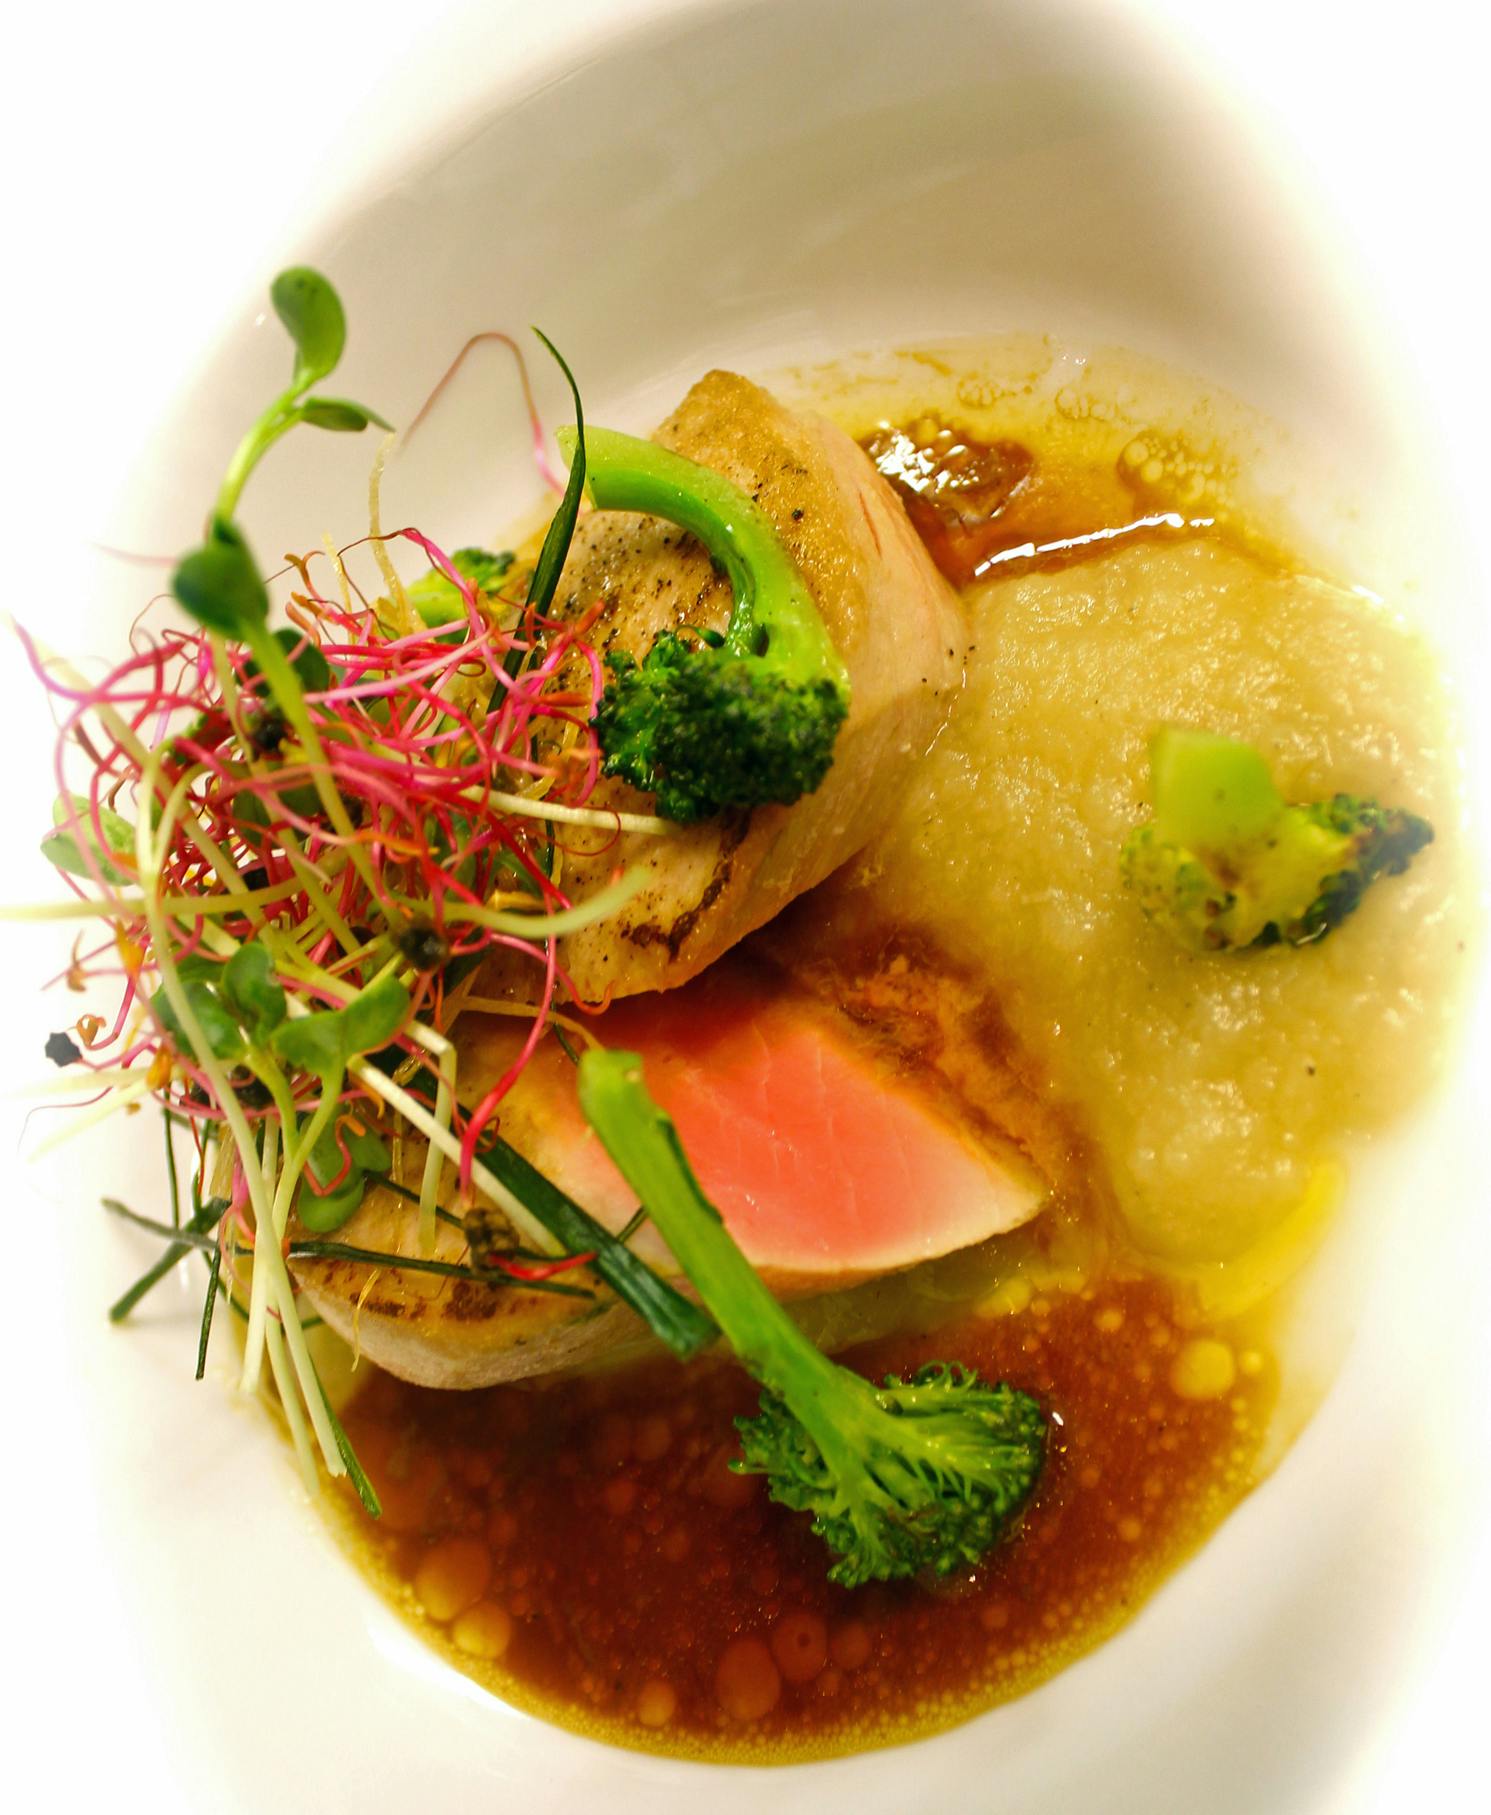 Halstrad tonfisk med bakad lökkräm, råstekt broccoli och brynt sojasmör